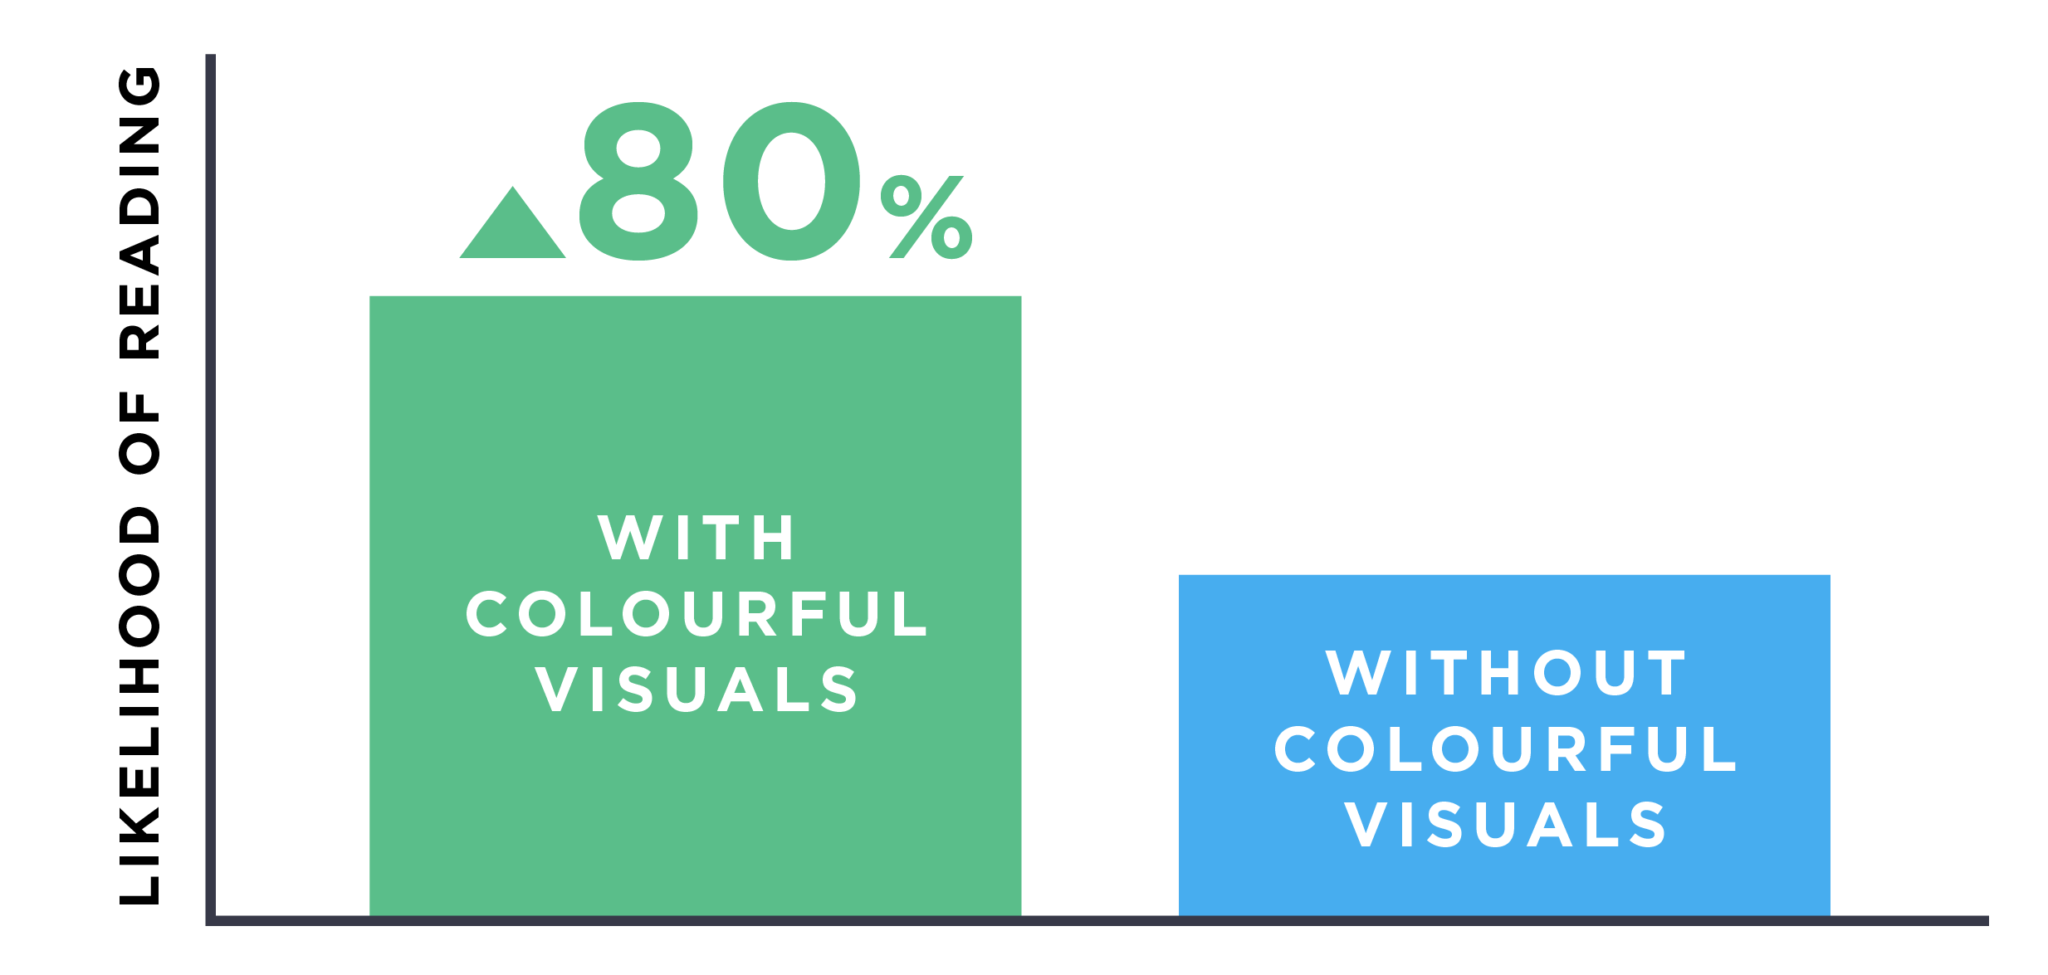 hình ảnh nhiều màu sắc làm tăng khả năng đọc